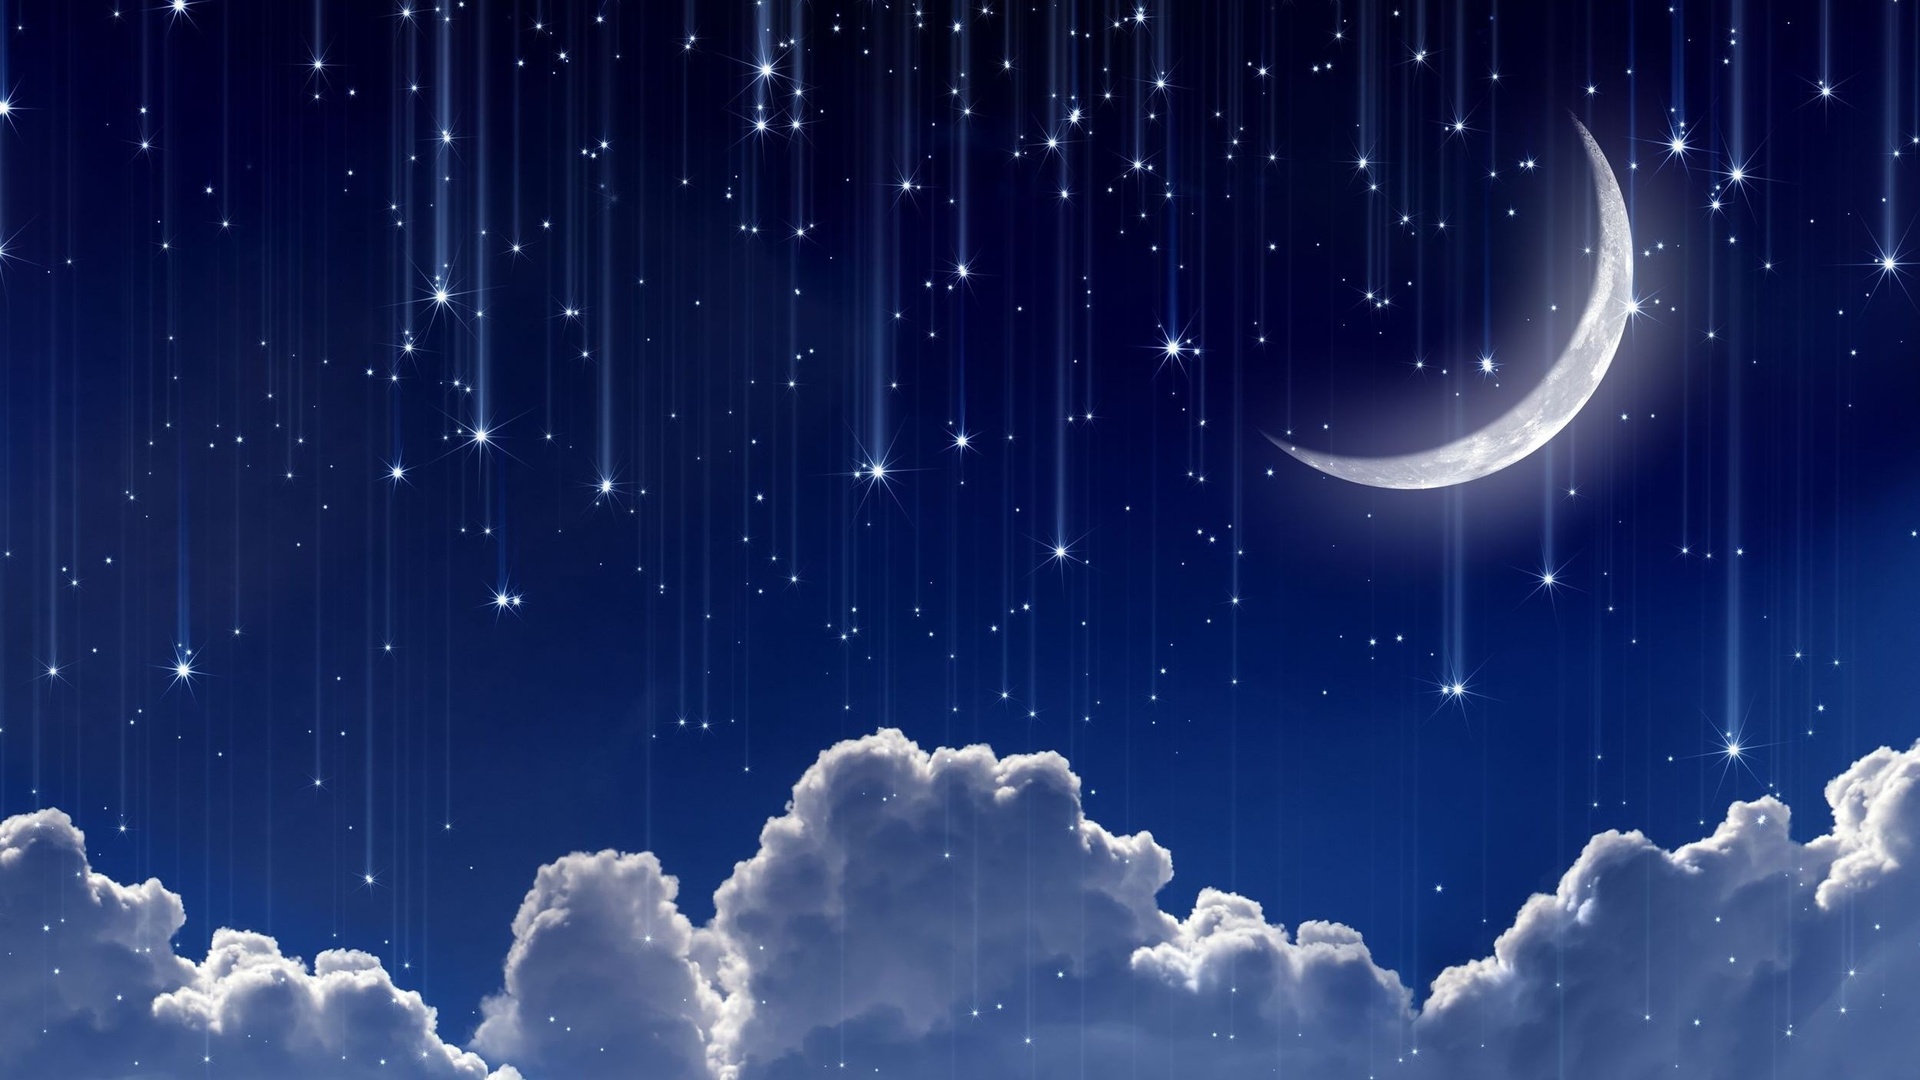 Ночное небо фото красивые с луной